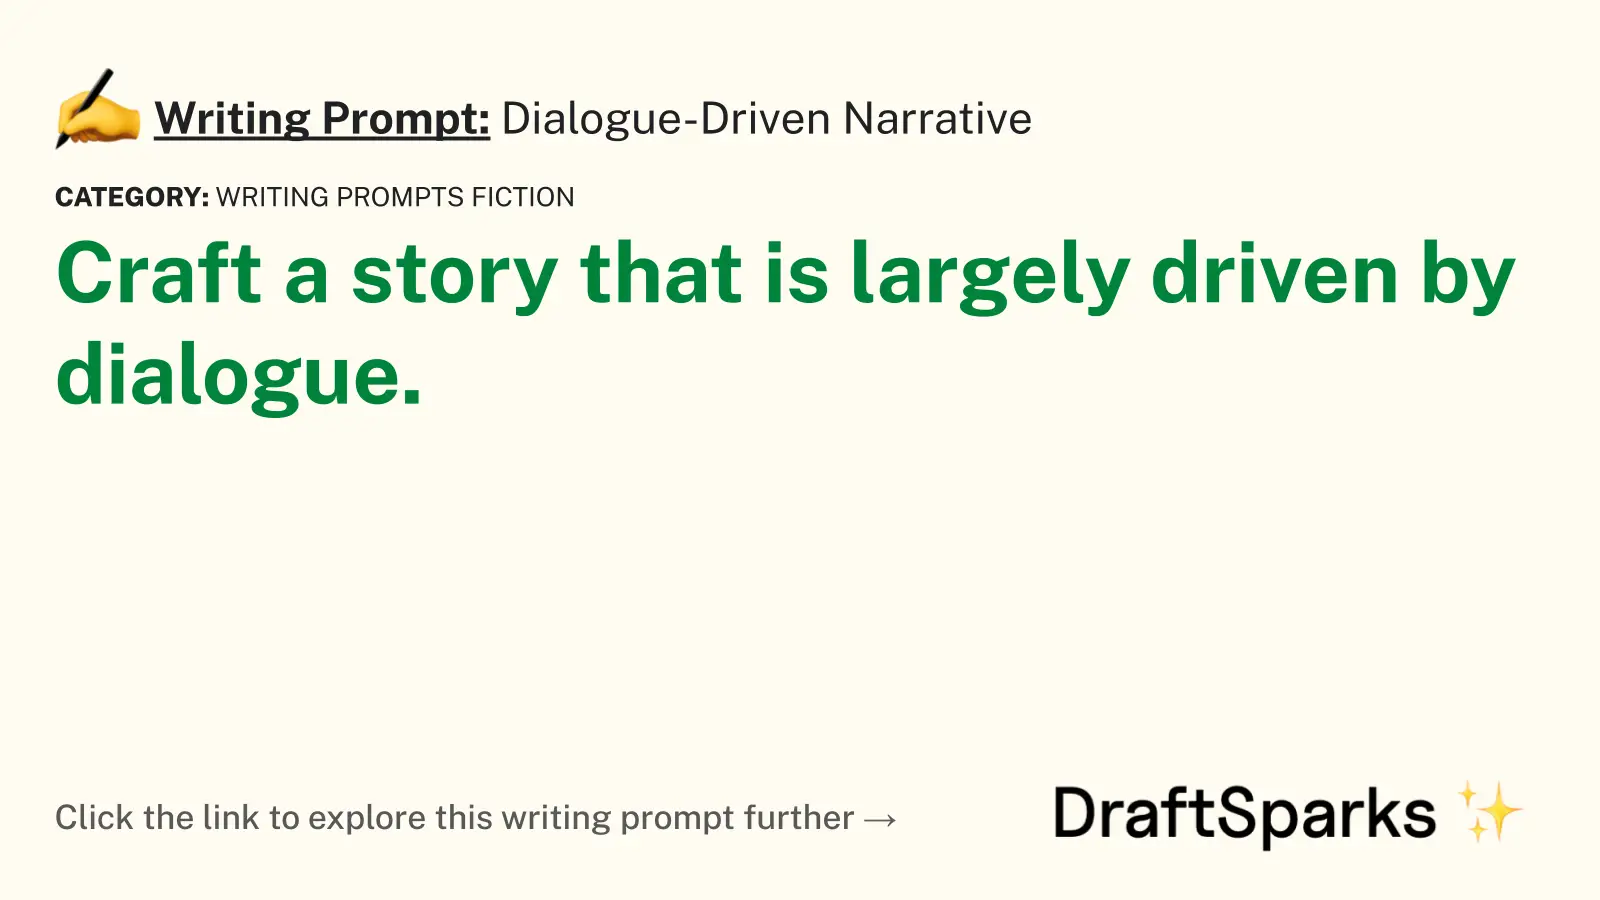 Dialogue-Driven Narrative